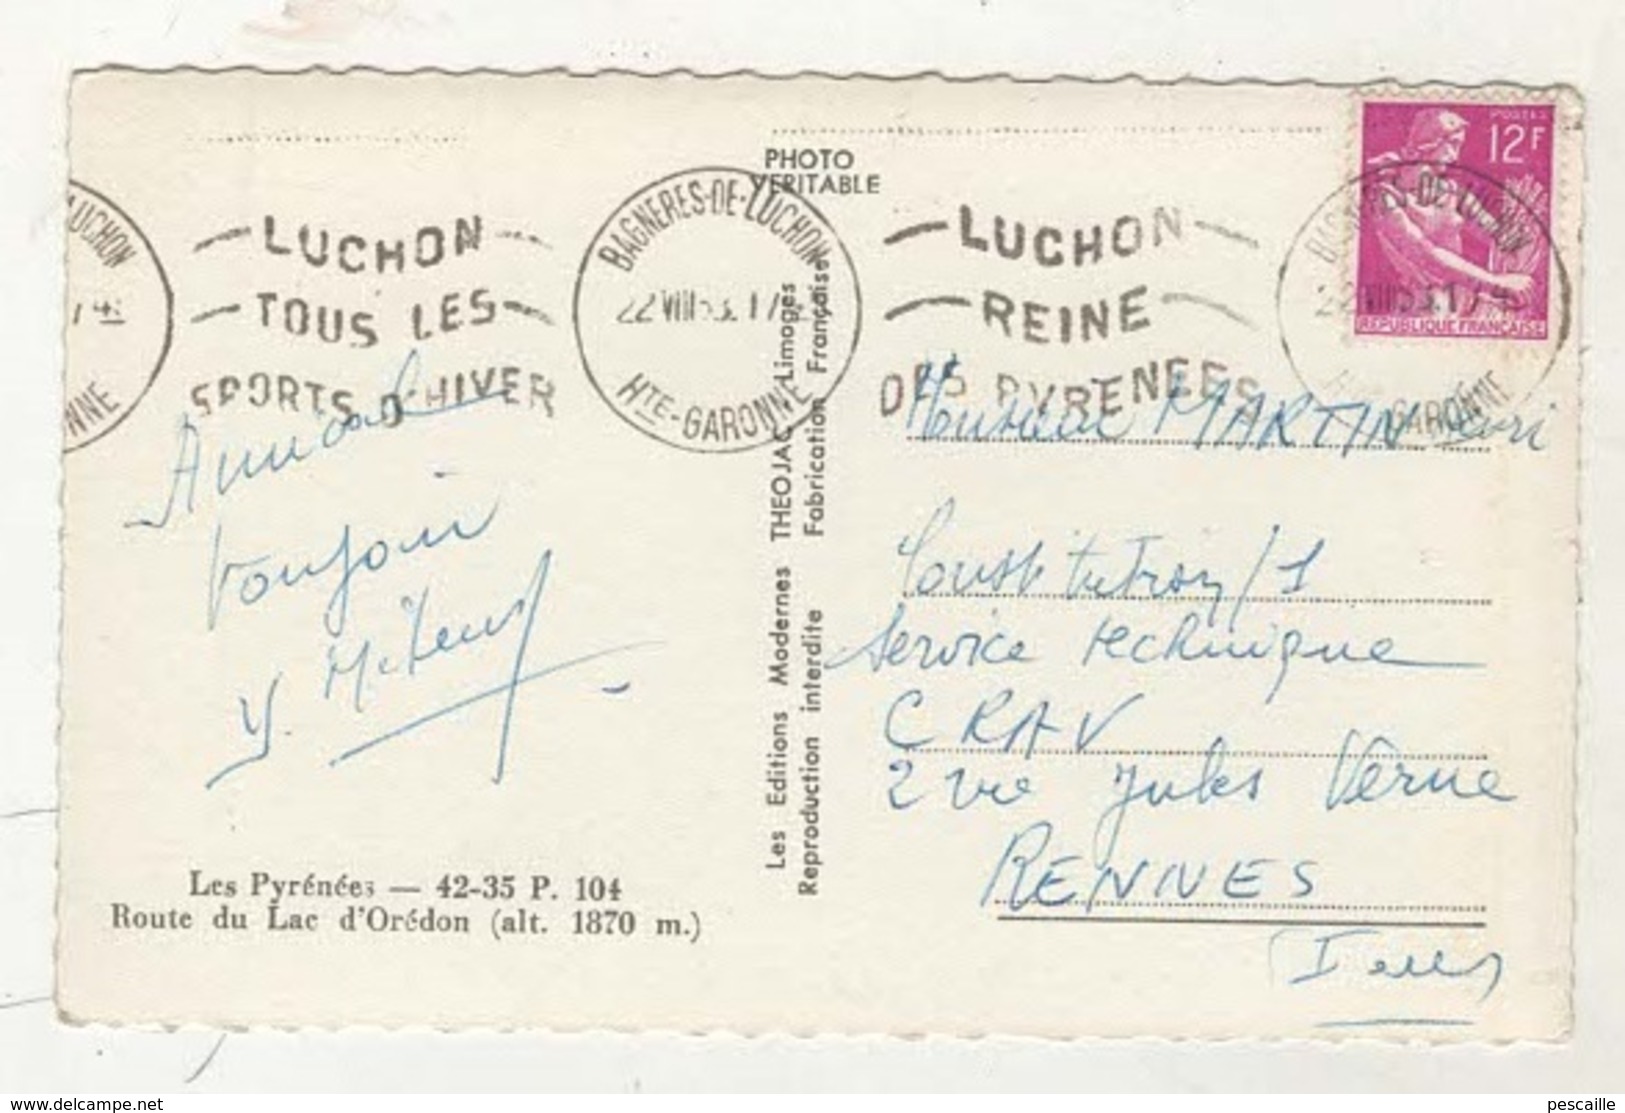 65 HAUTES PYRENEES Aragnouet - CP ROUTE DU LAC D'OREDON - THEOJAC 42-35 P. 104 - CIRCULEE EN 1953 - Aragnouet